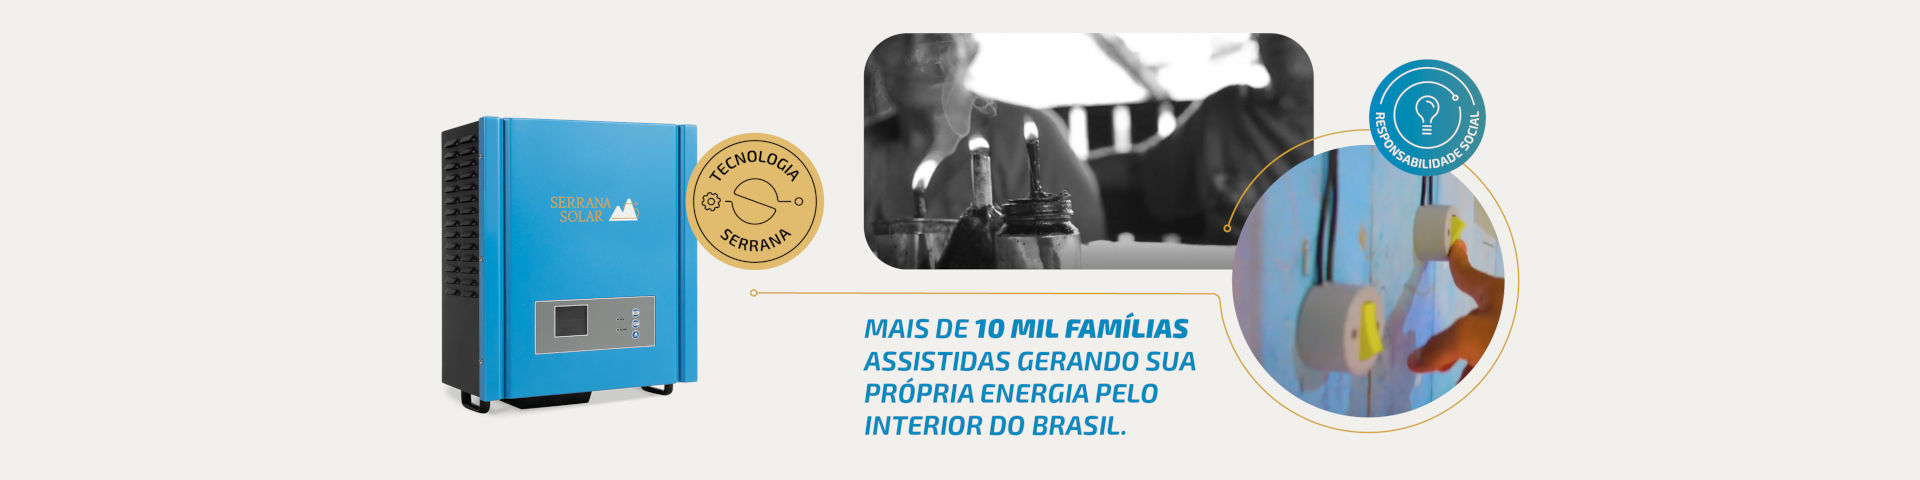 Banner Mais de 10 mil famílias assistidas gerando sua própria energia pelo interior do Brasil